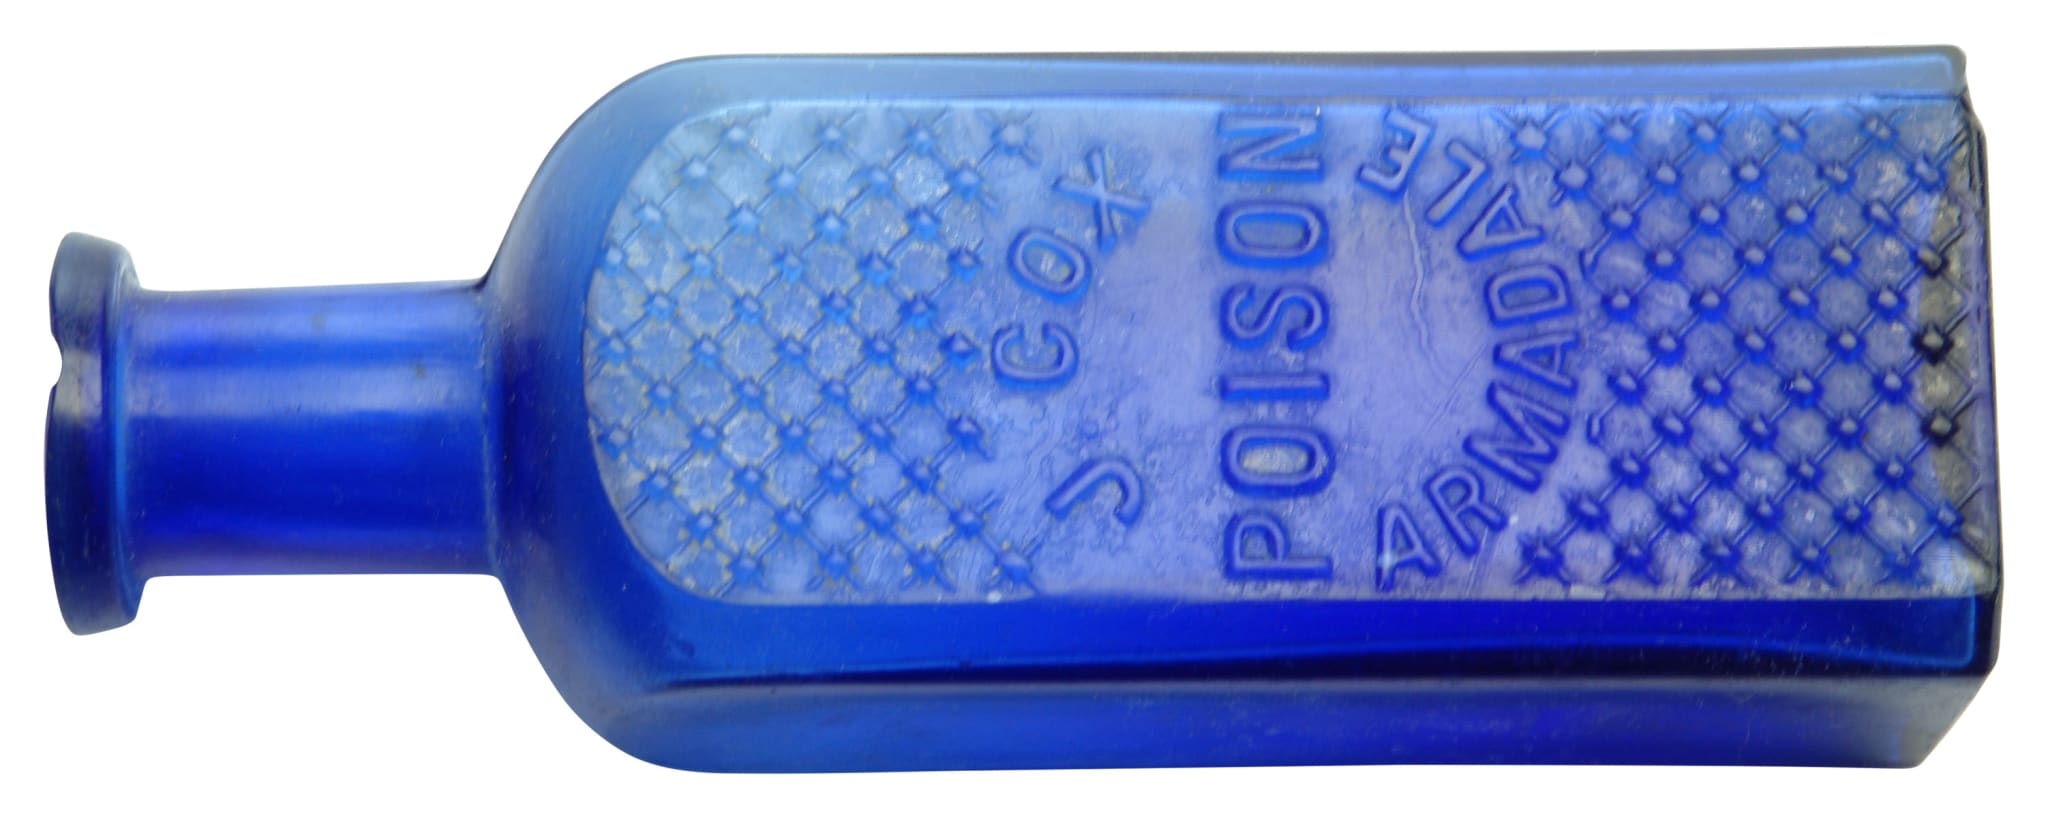 Cox Poison Armadale Cobalt Blue Poison Bottle